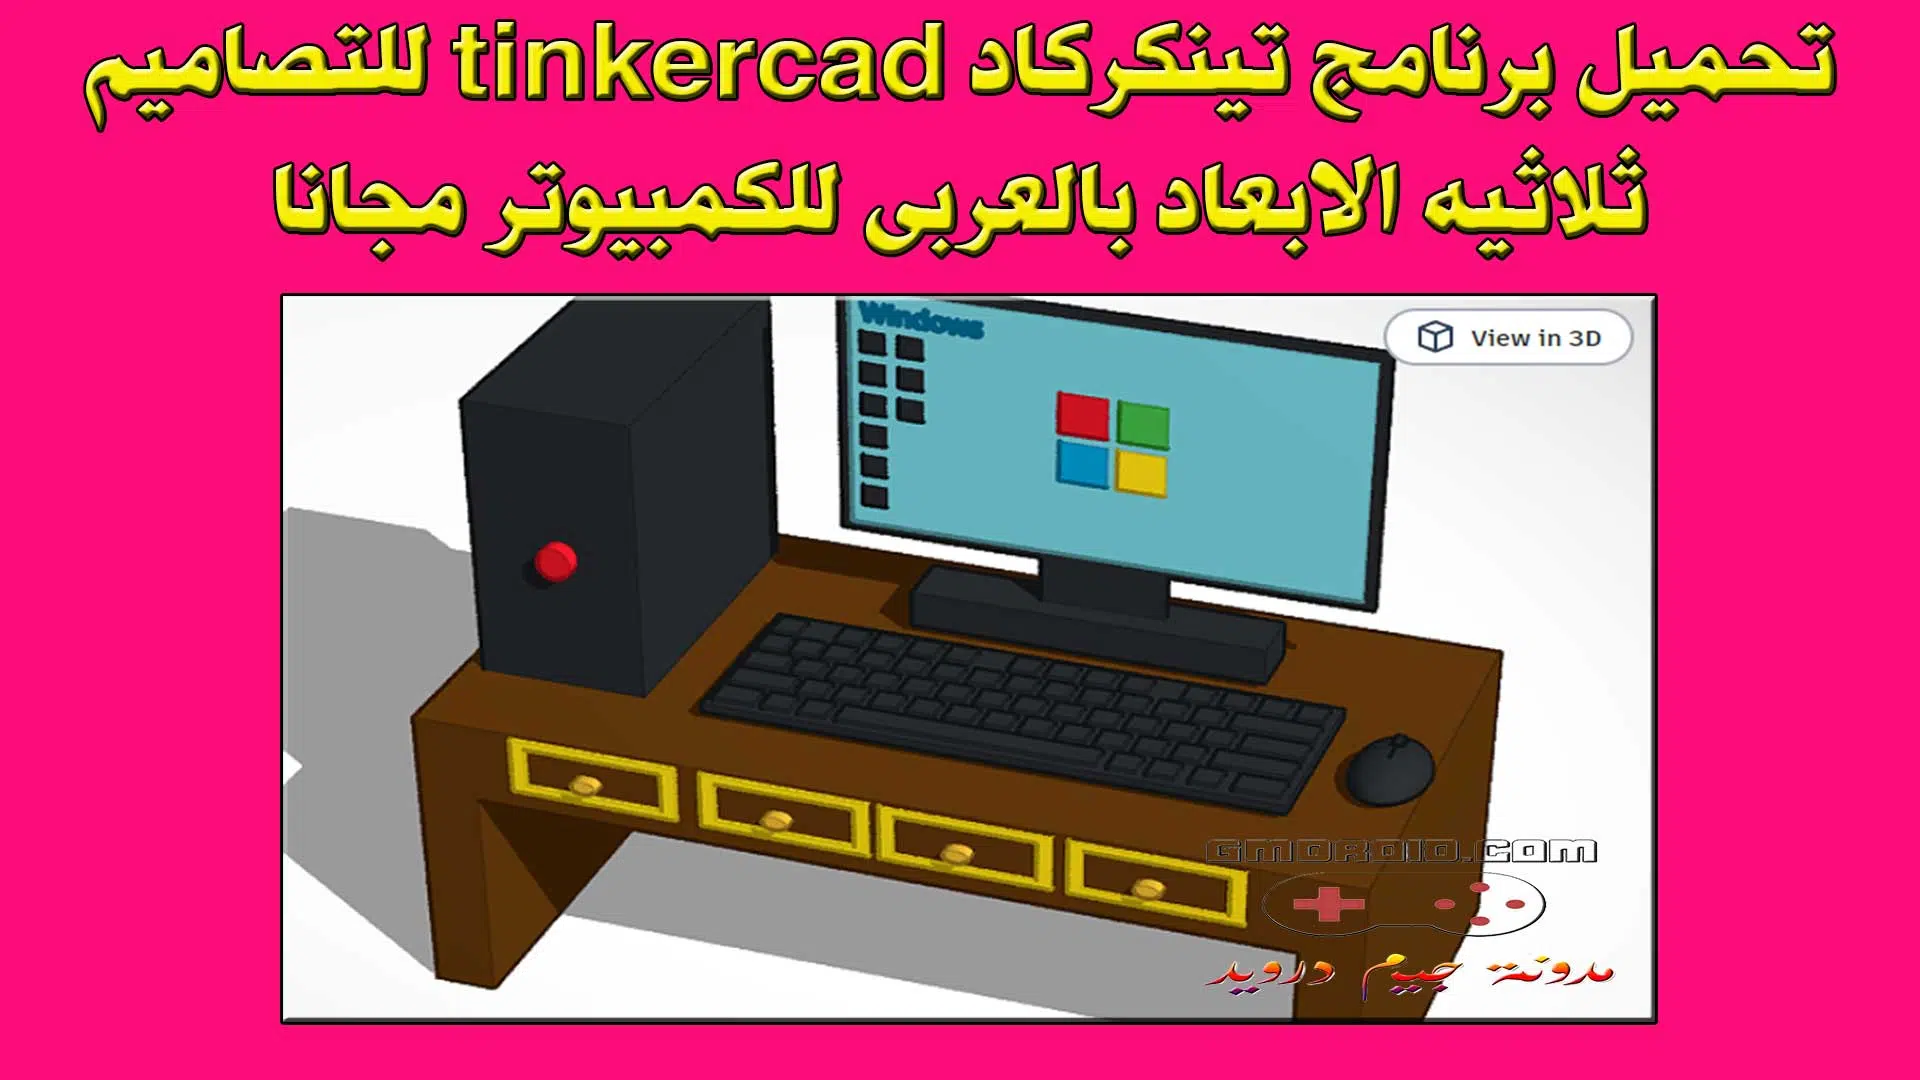 تحميل برنامج تينكركاد tinkercad للتصاميم ثلاثيه الابعاد بالعربى للاندرويد والايفون مجانا